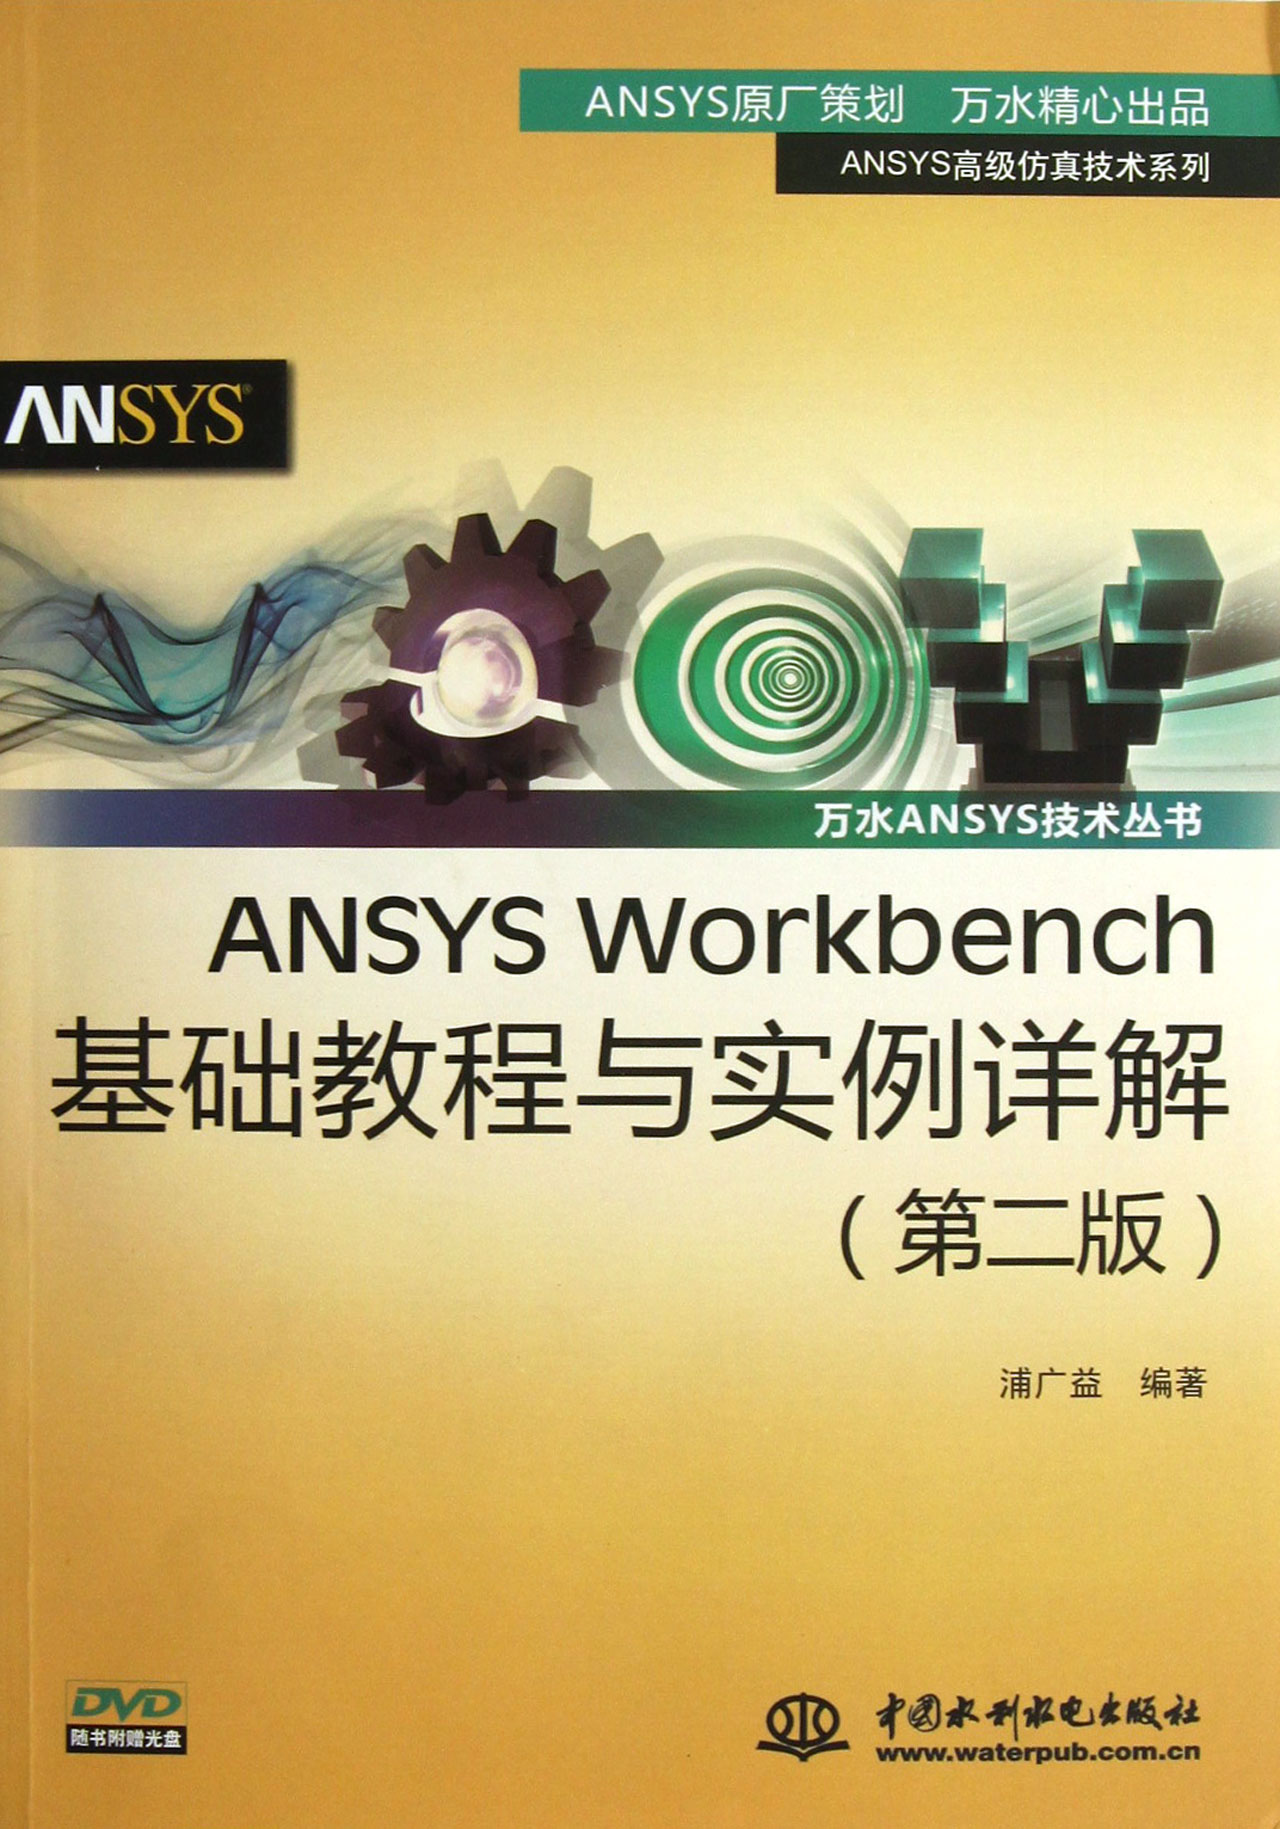 ANSYS Workbench基础教程与实例详解(附光盘